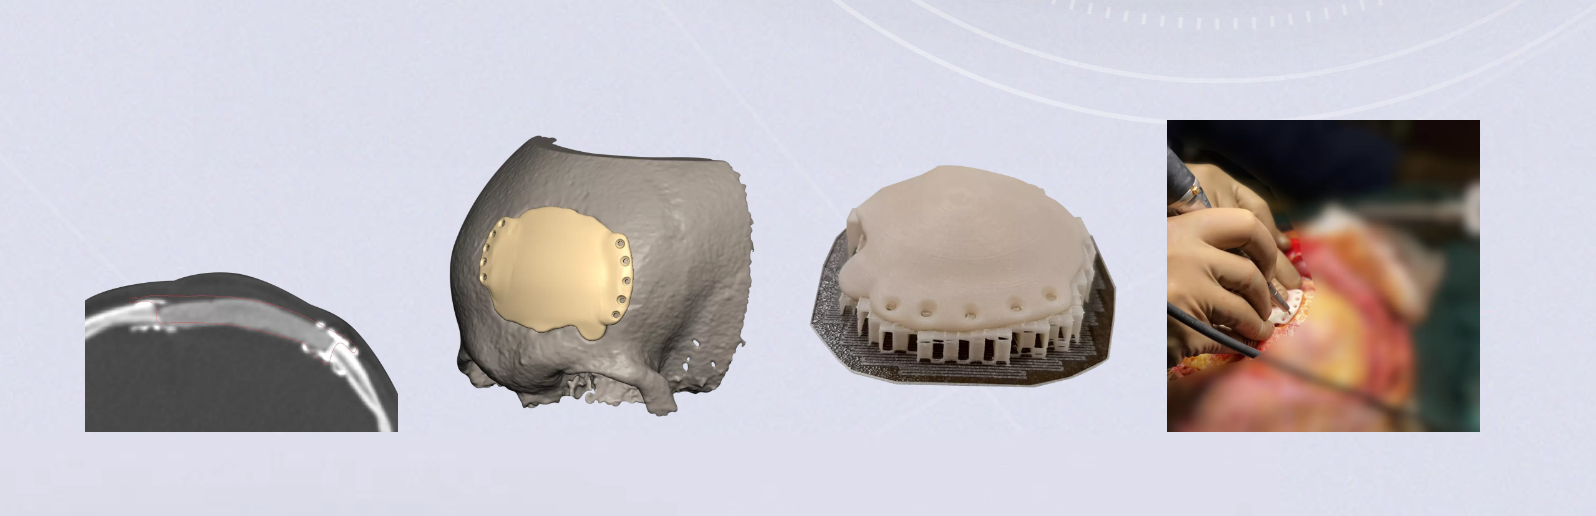 Implant czaszkowy drukowany 3D (źrodło: cyberbone.eu)